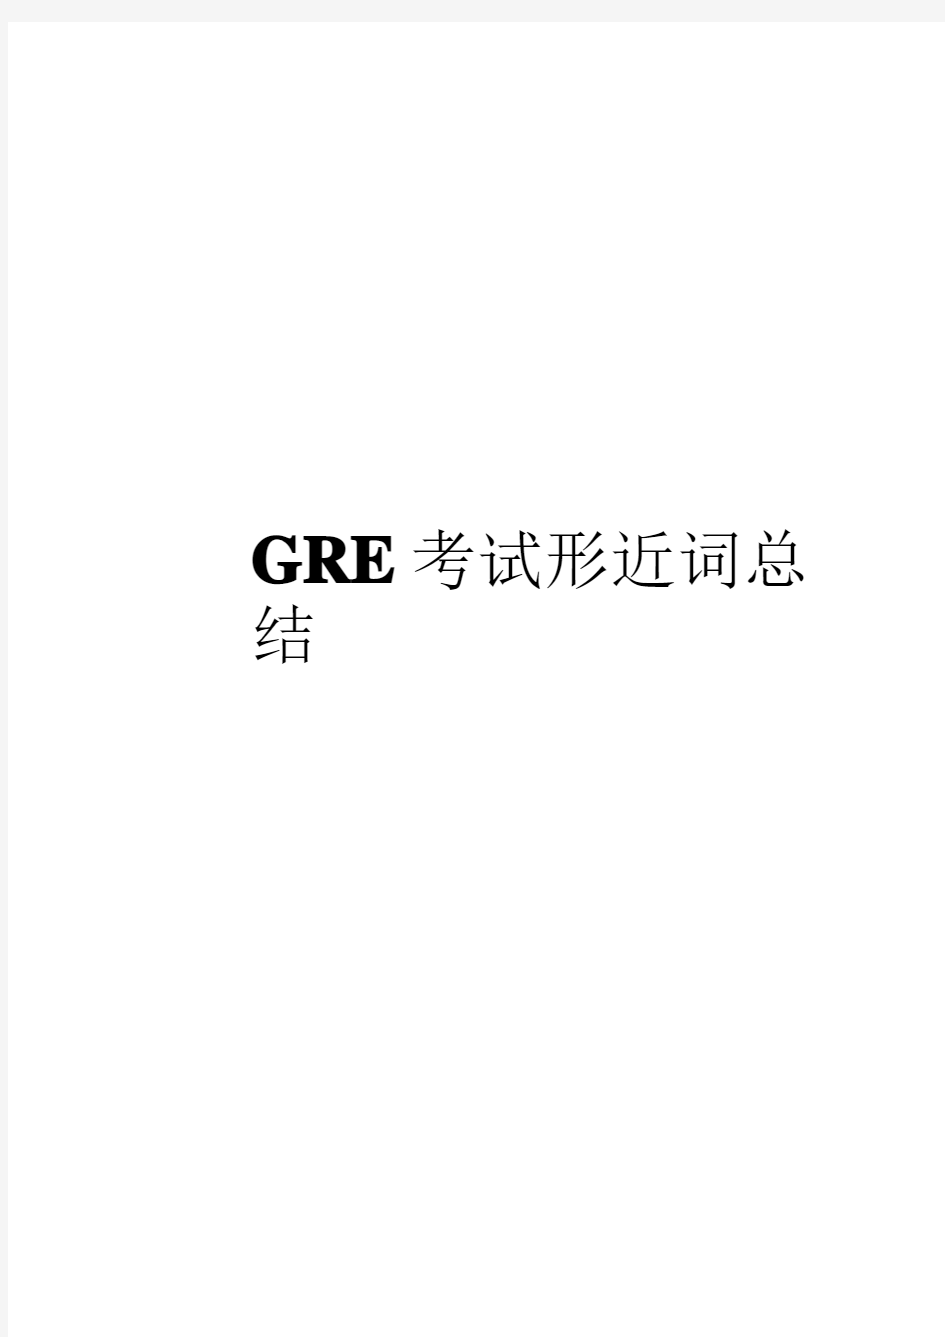 GRE考试形近词总结(最终版)